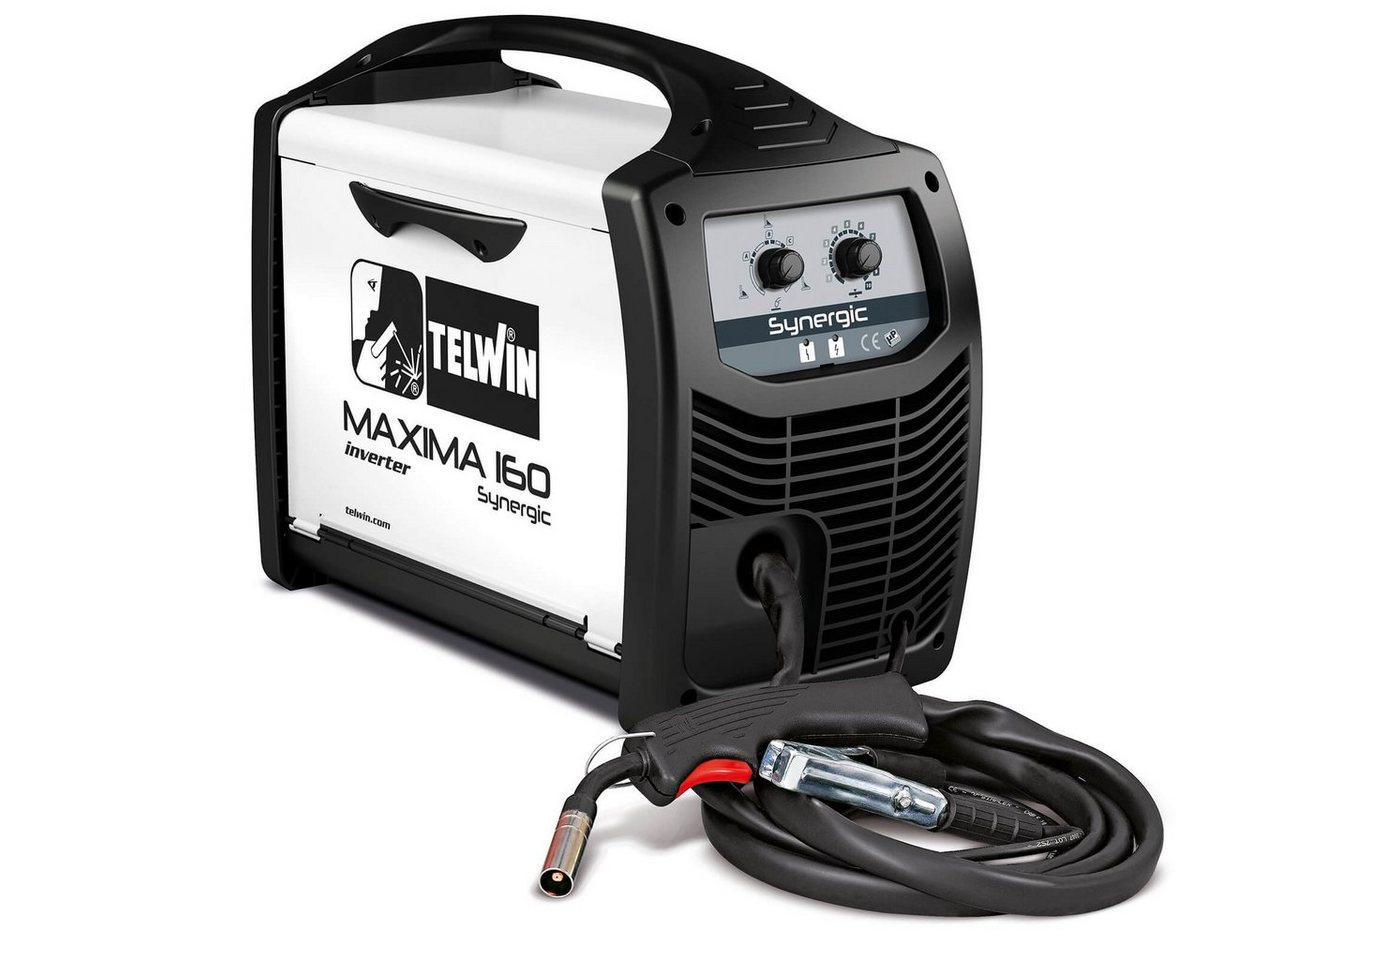 TELWIN Elektroschweißgerät Telwin Elements MAXIMA 160 SYNERGIC Schutzgas Schweißgerät 150A von TELWIN